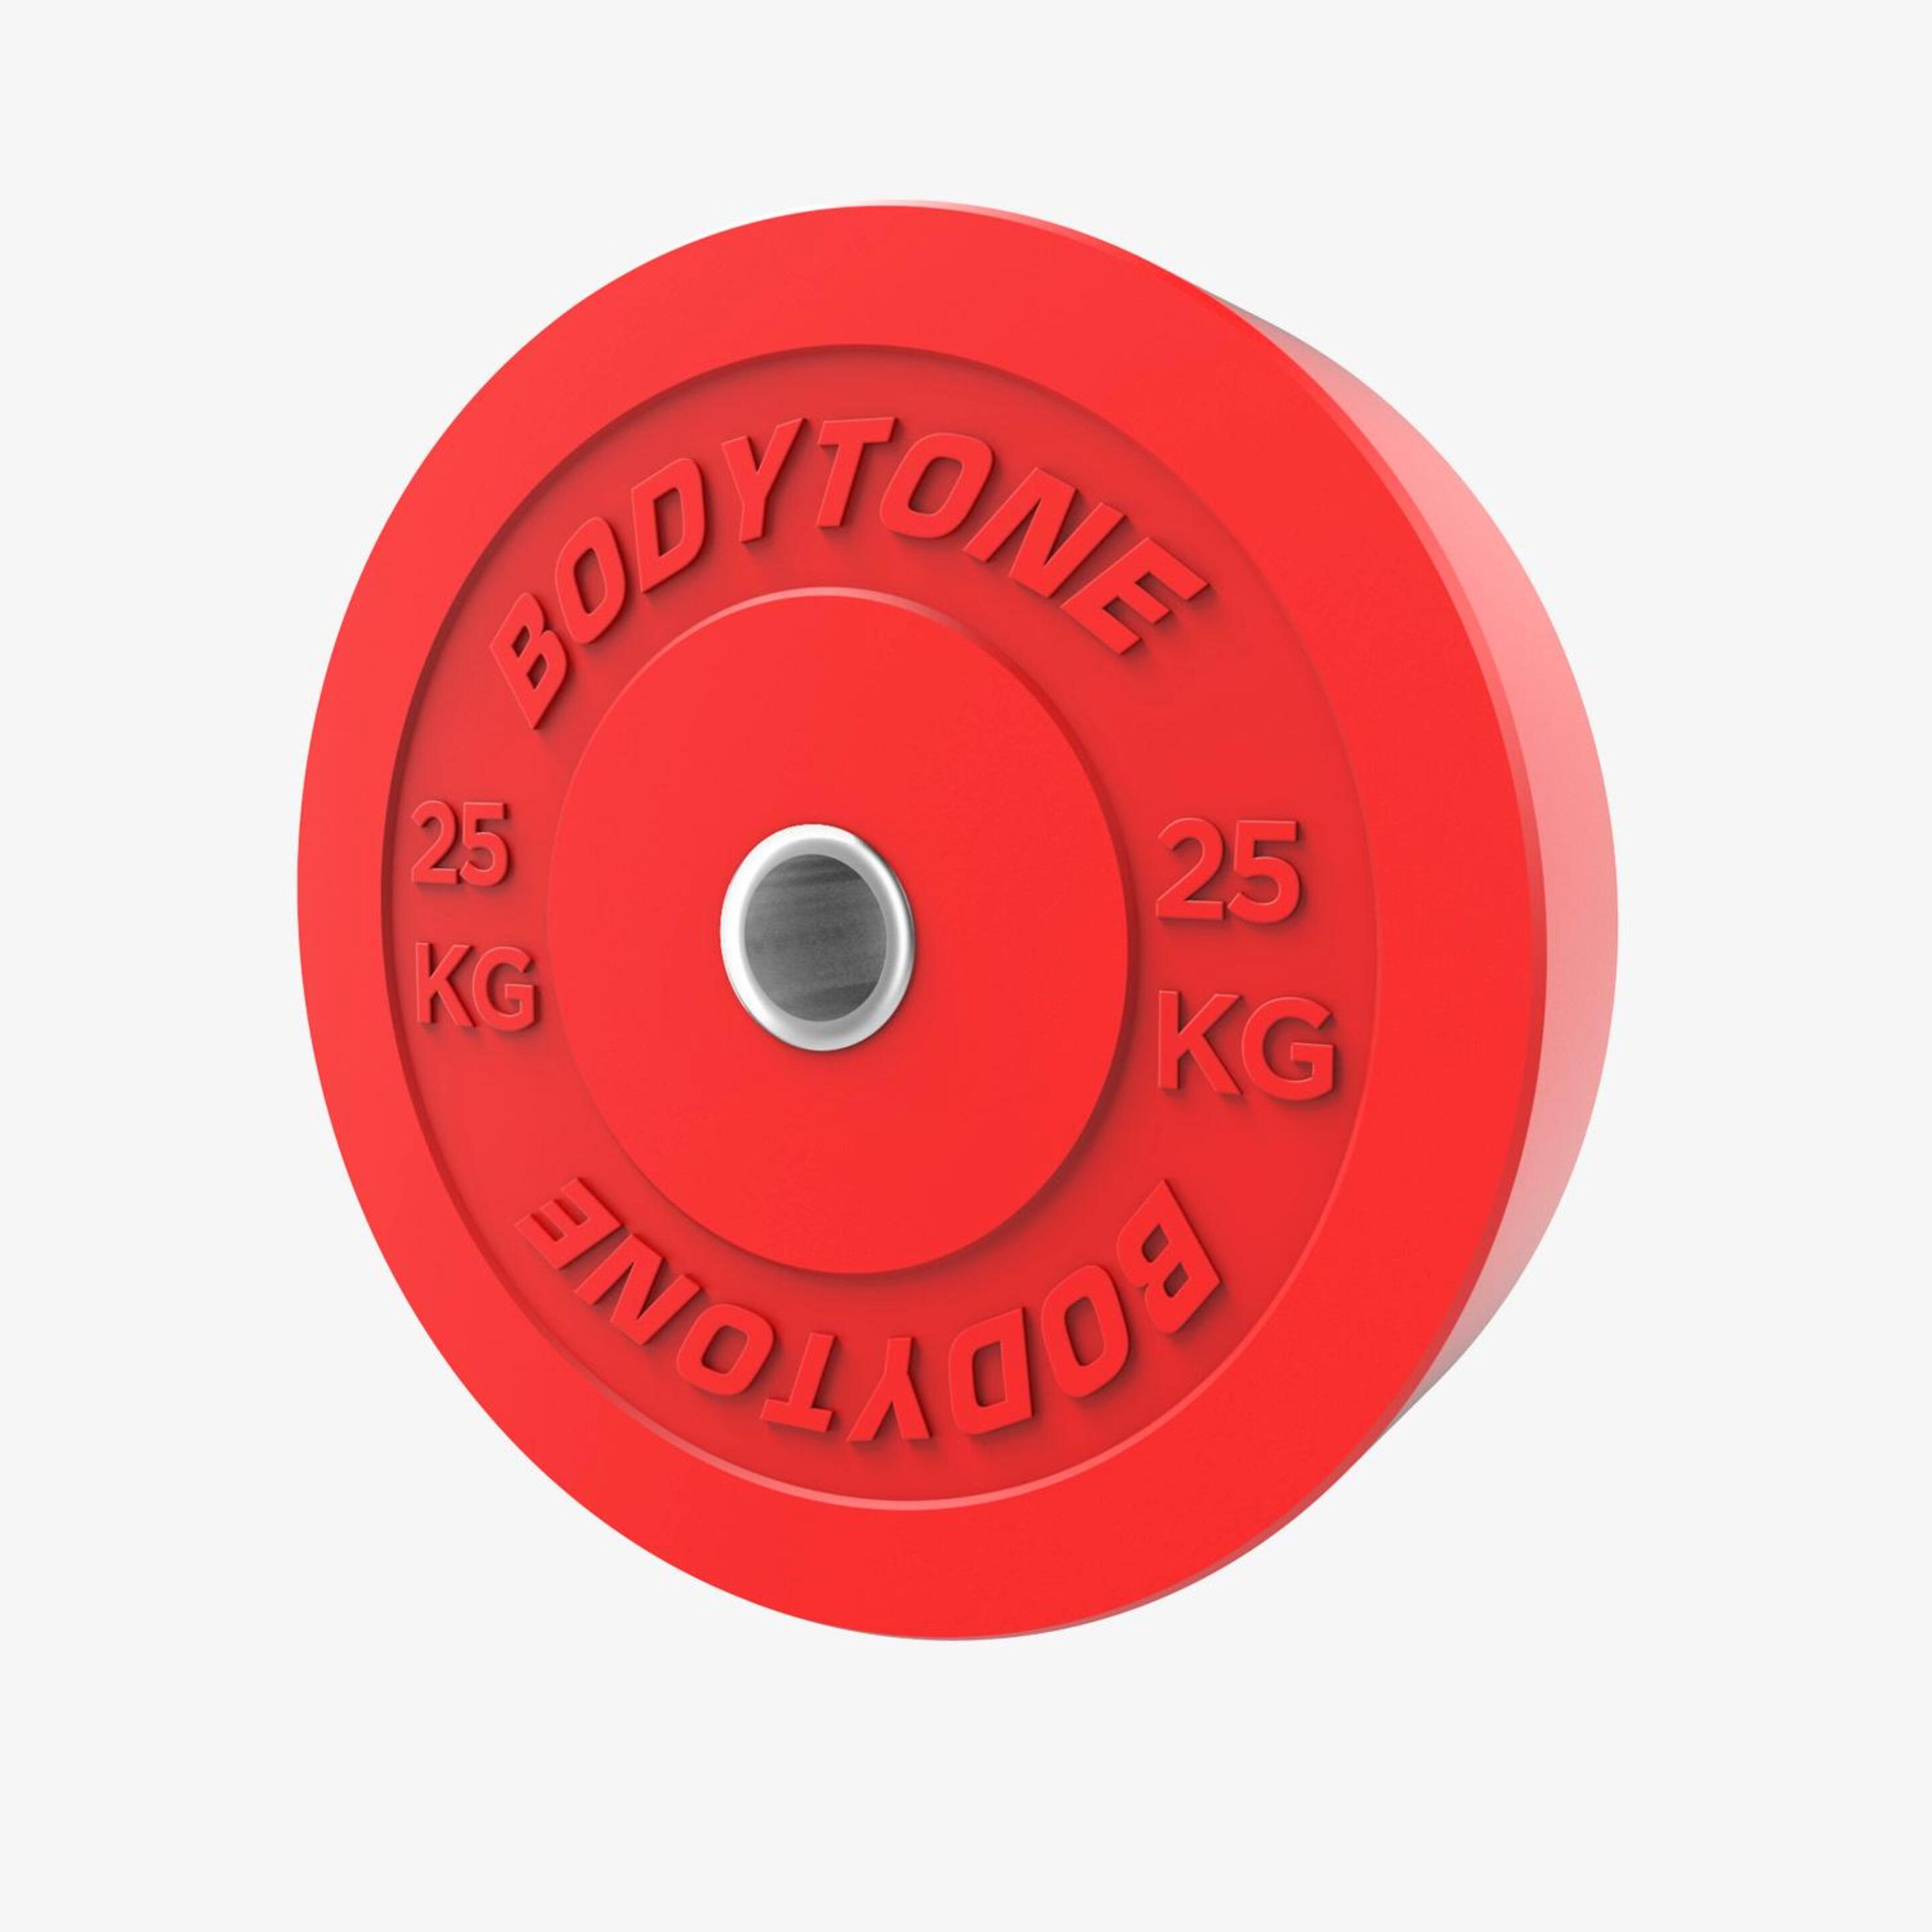 Disco Bumper 25kg Bodytone - rojo - 